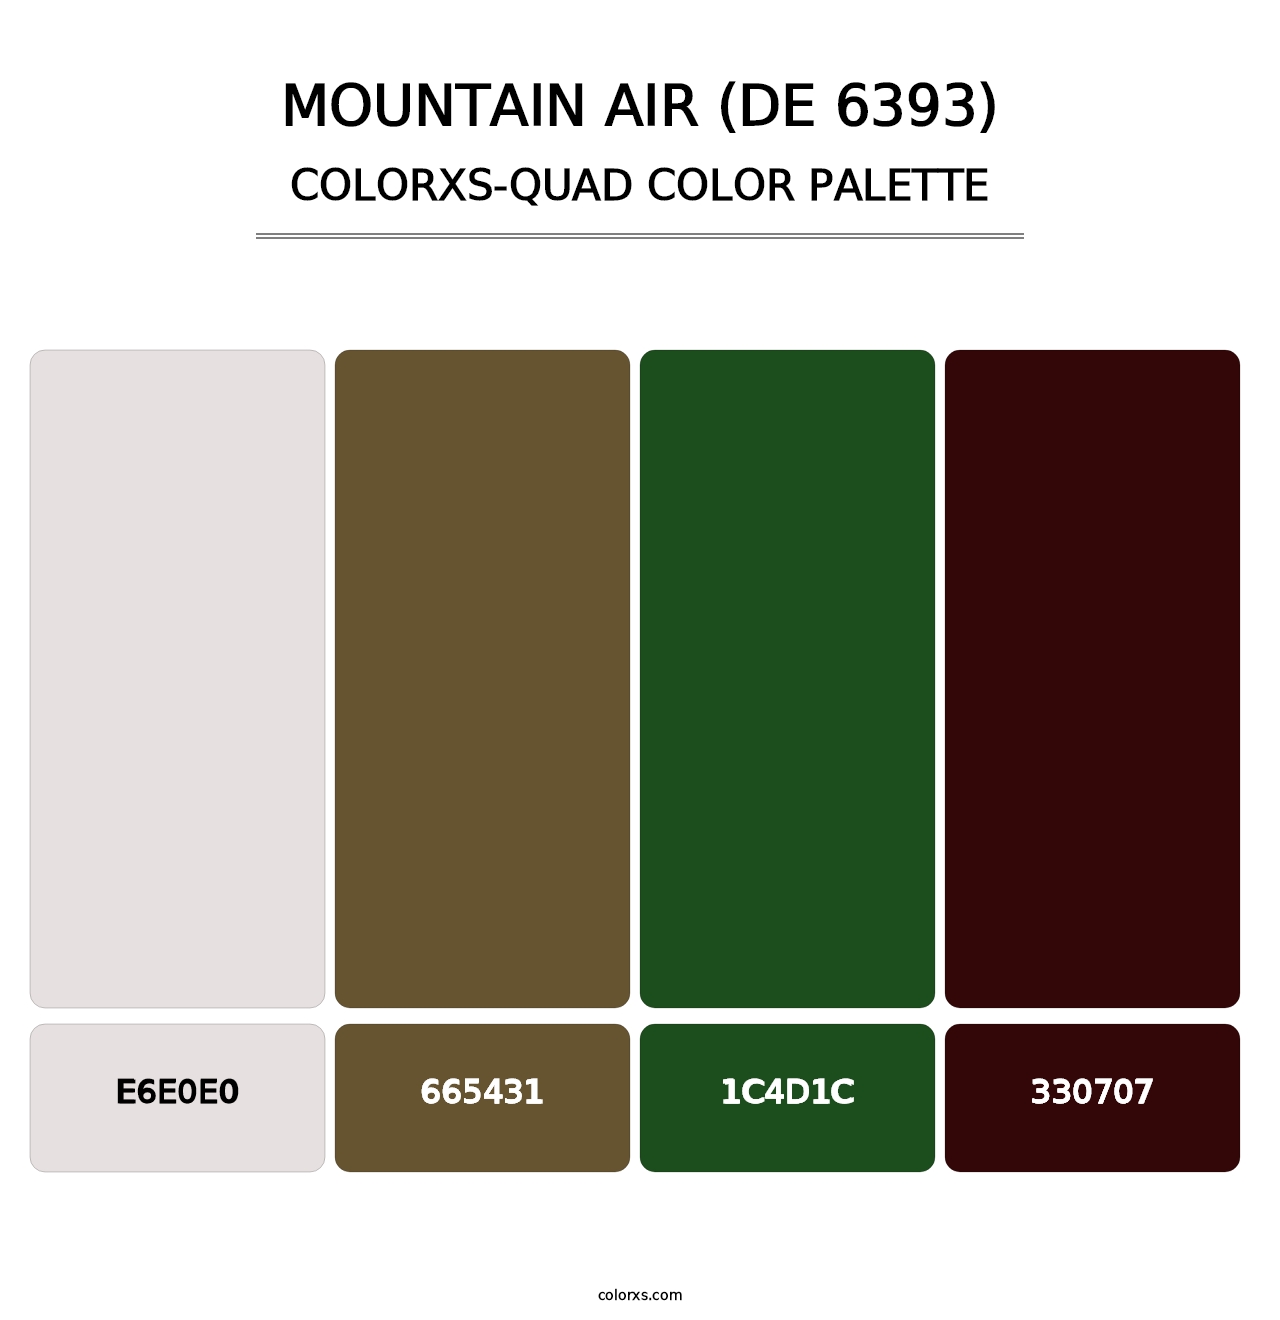 Mountain Air (DE 6393) - Colorxs Quad Palette